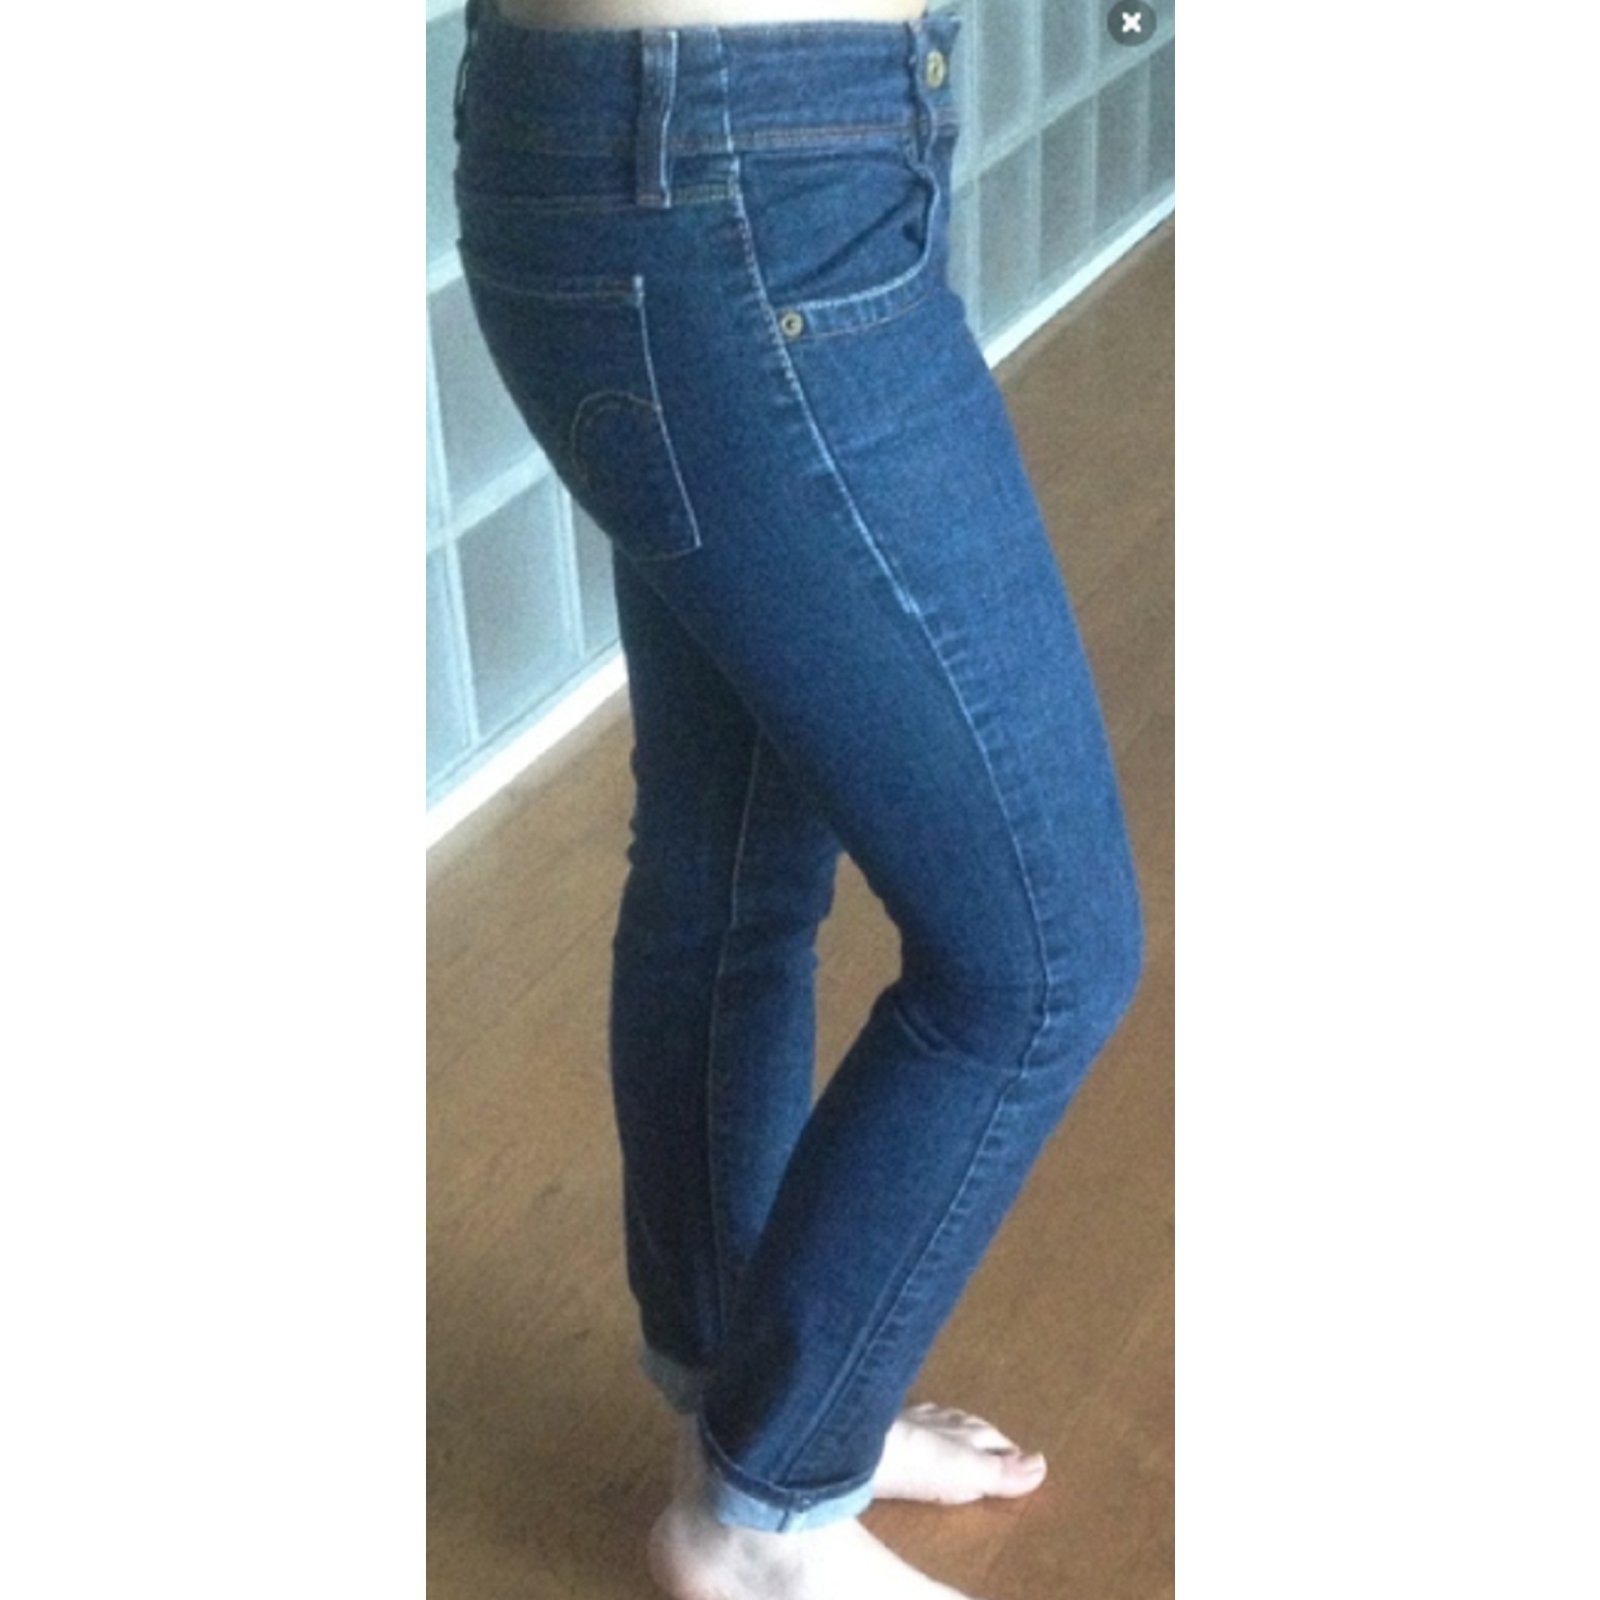 levis 571 slim fit jeans